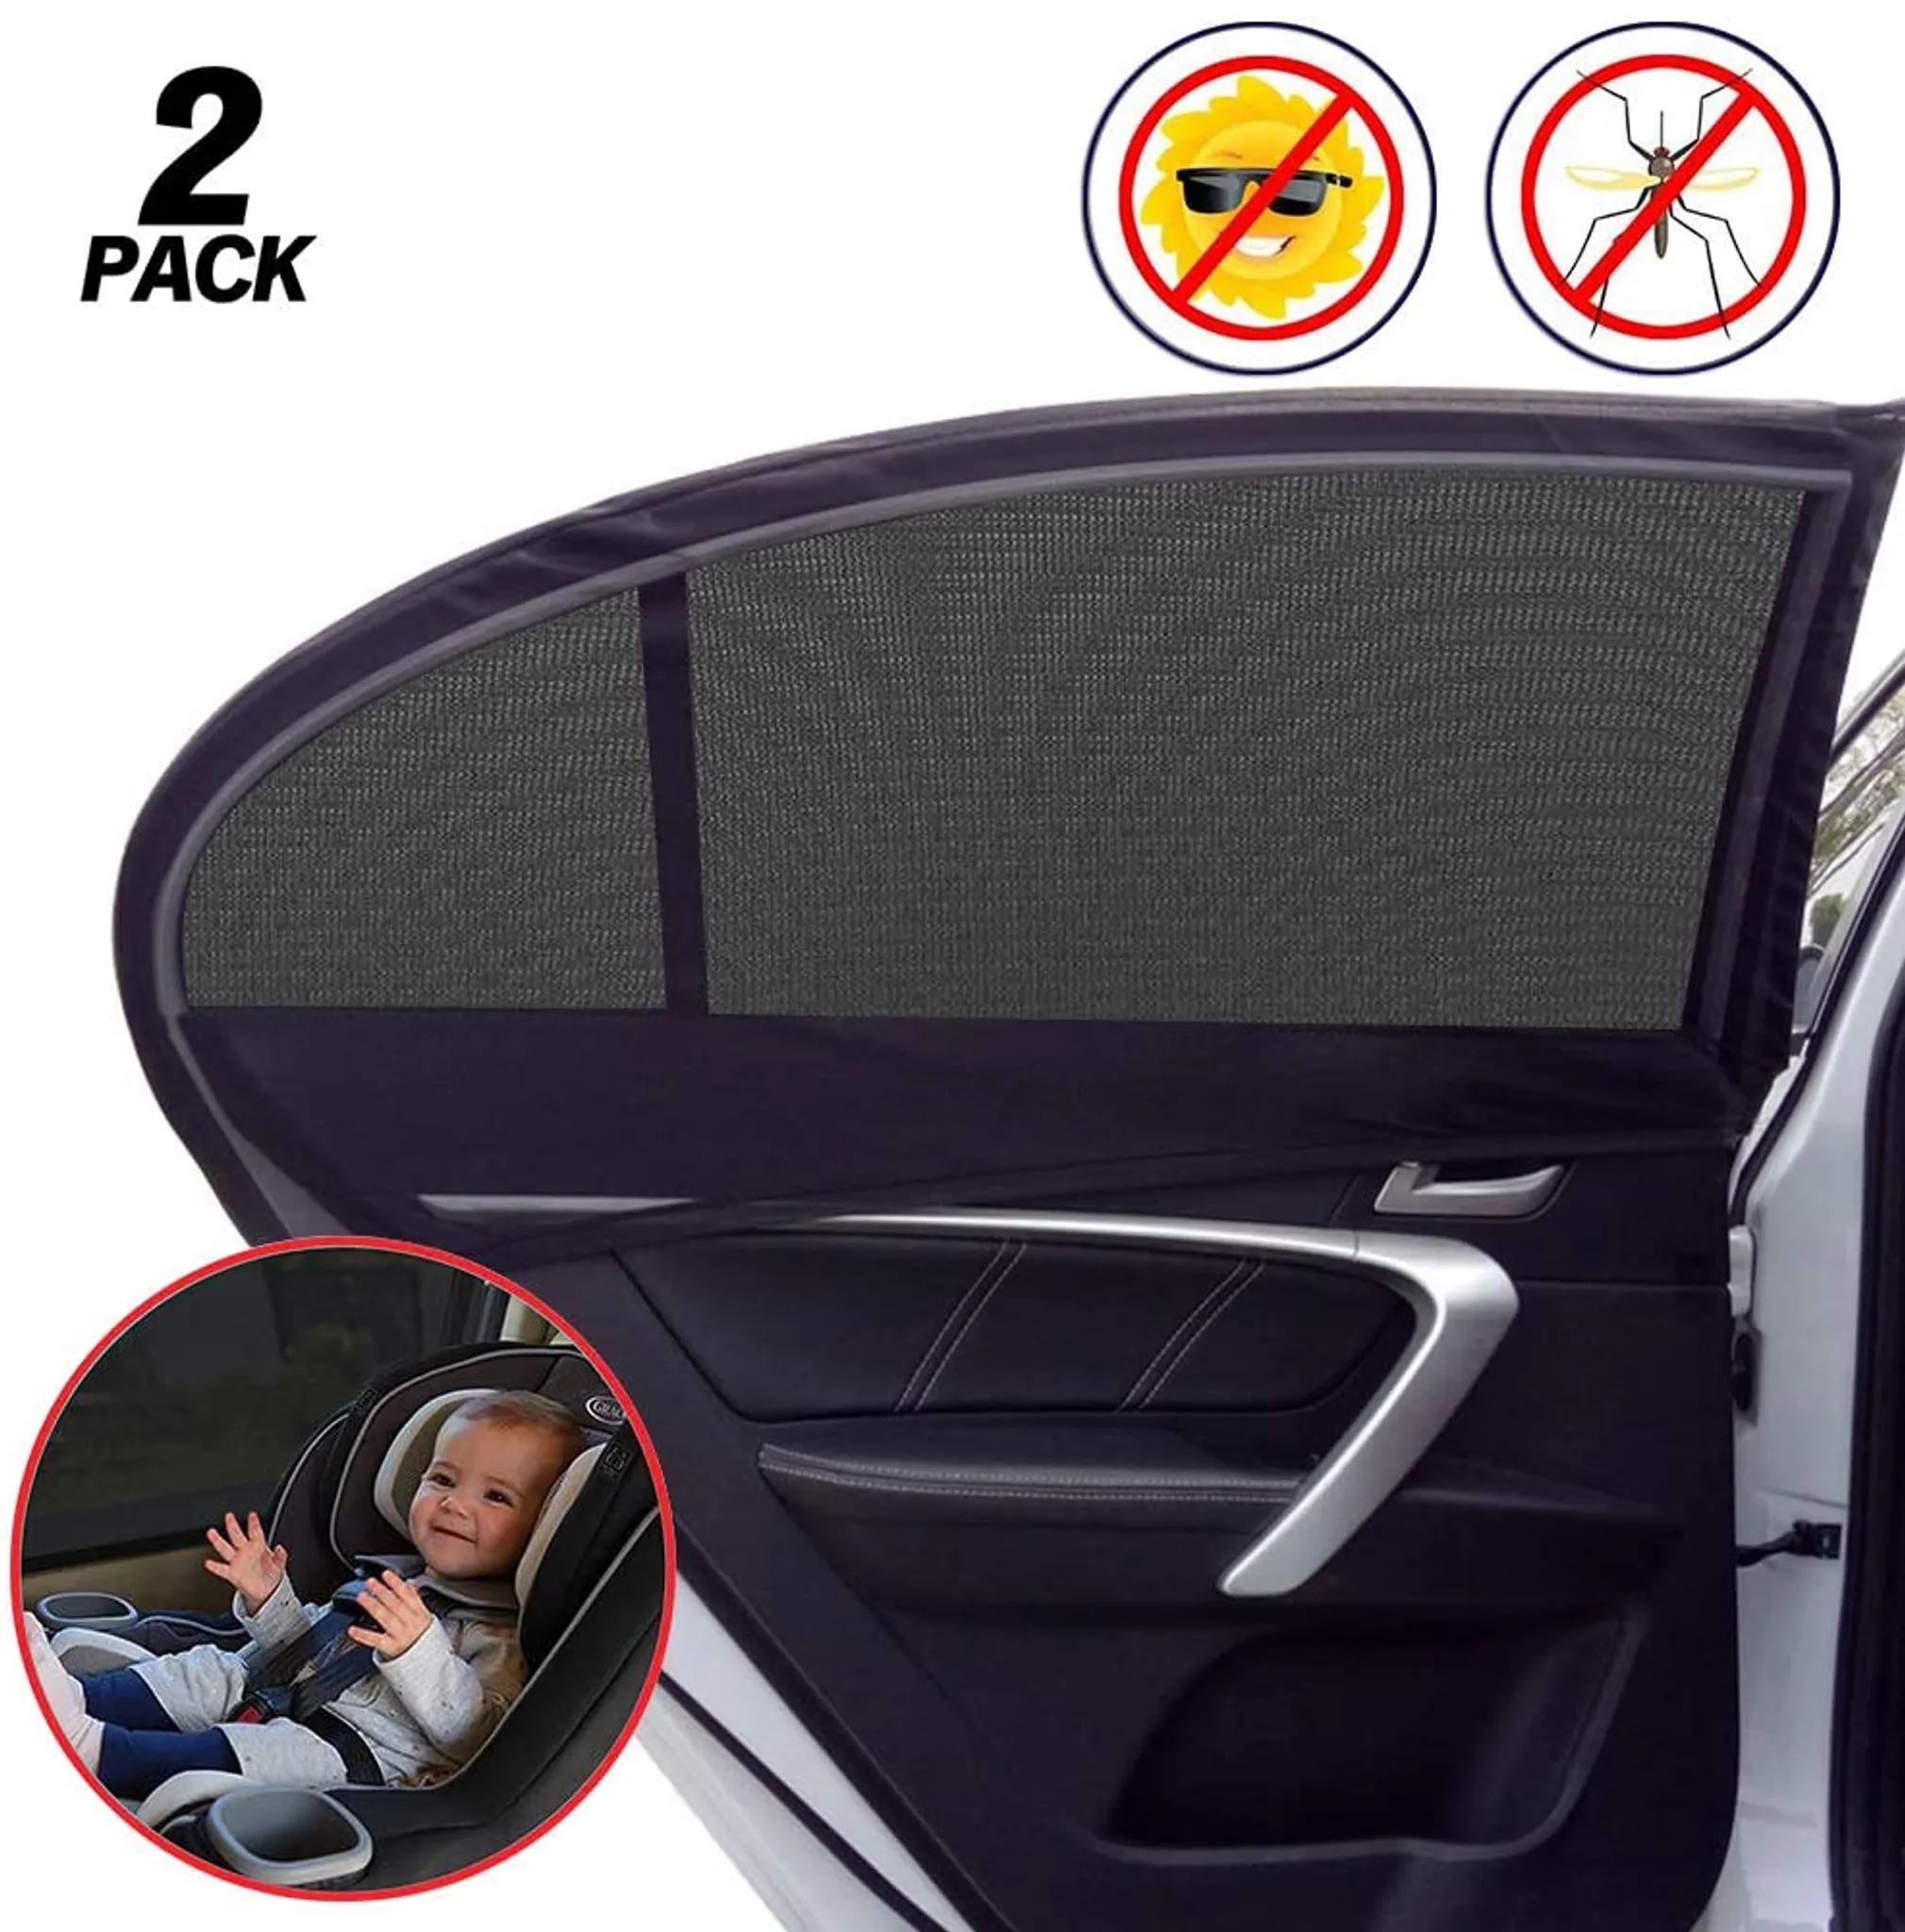 schwarz 31 cm,3 Pack für Seitenscheiben/Autofenster TOPLUS Auto Sonnenschutz Sonnenblenden für Baby,Kinder mit UV Schutz,51 